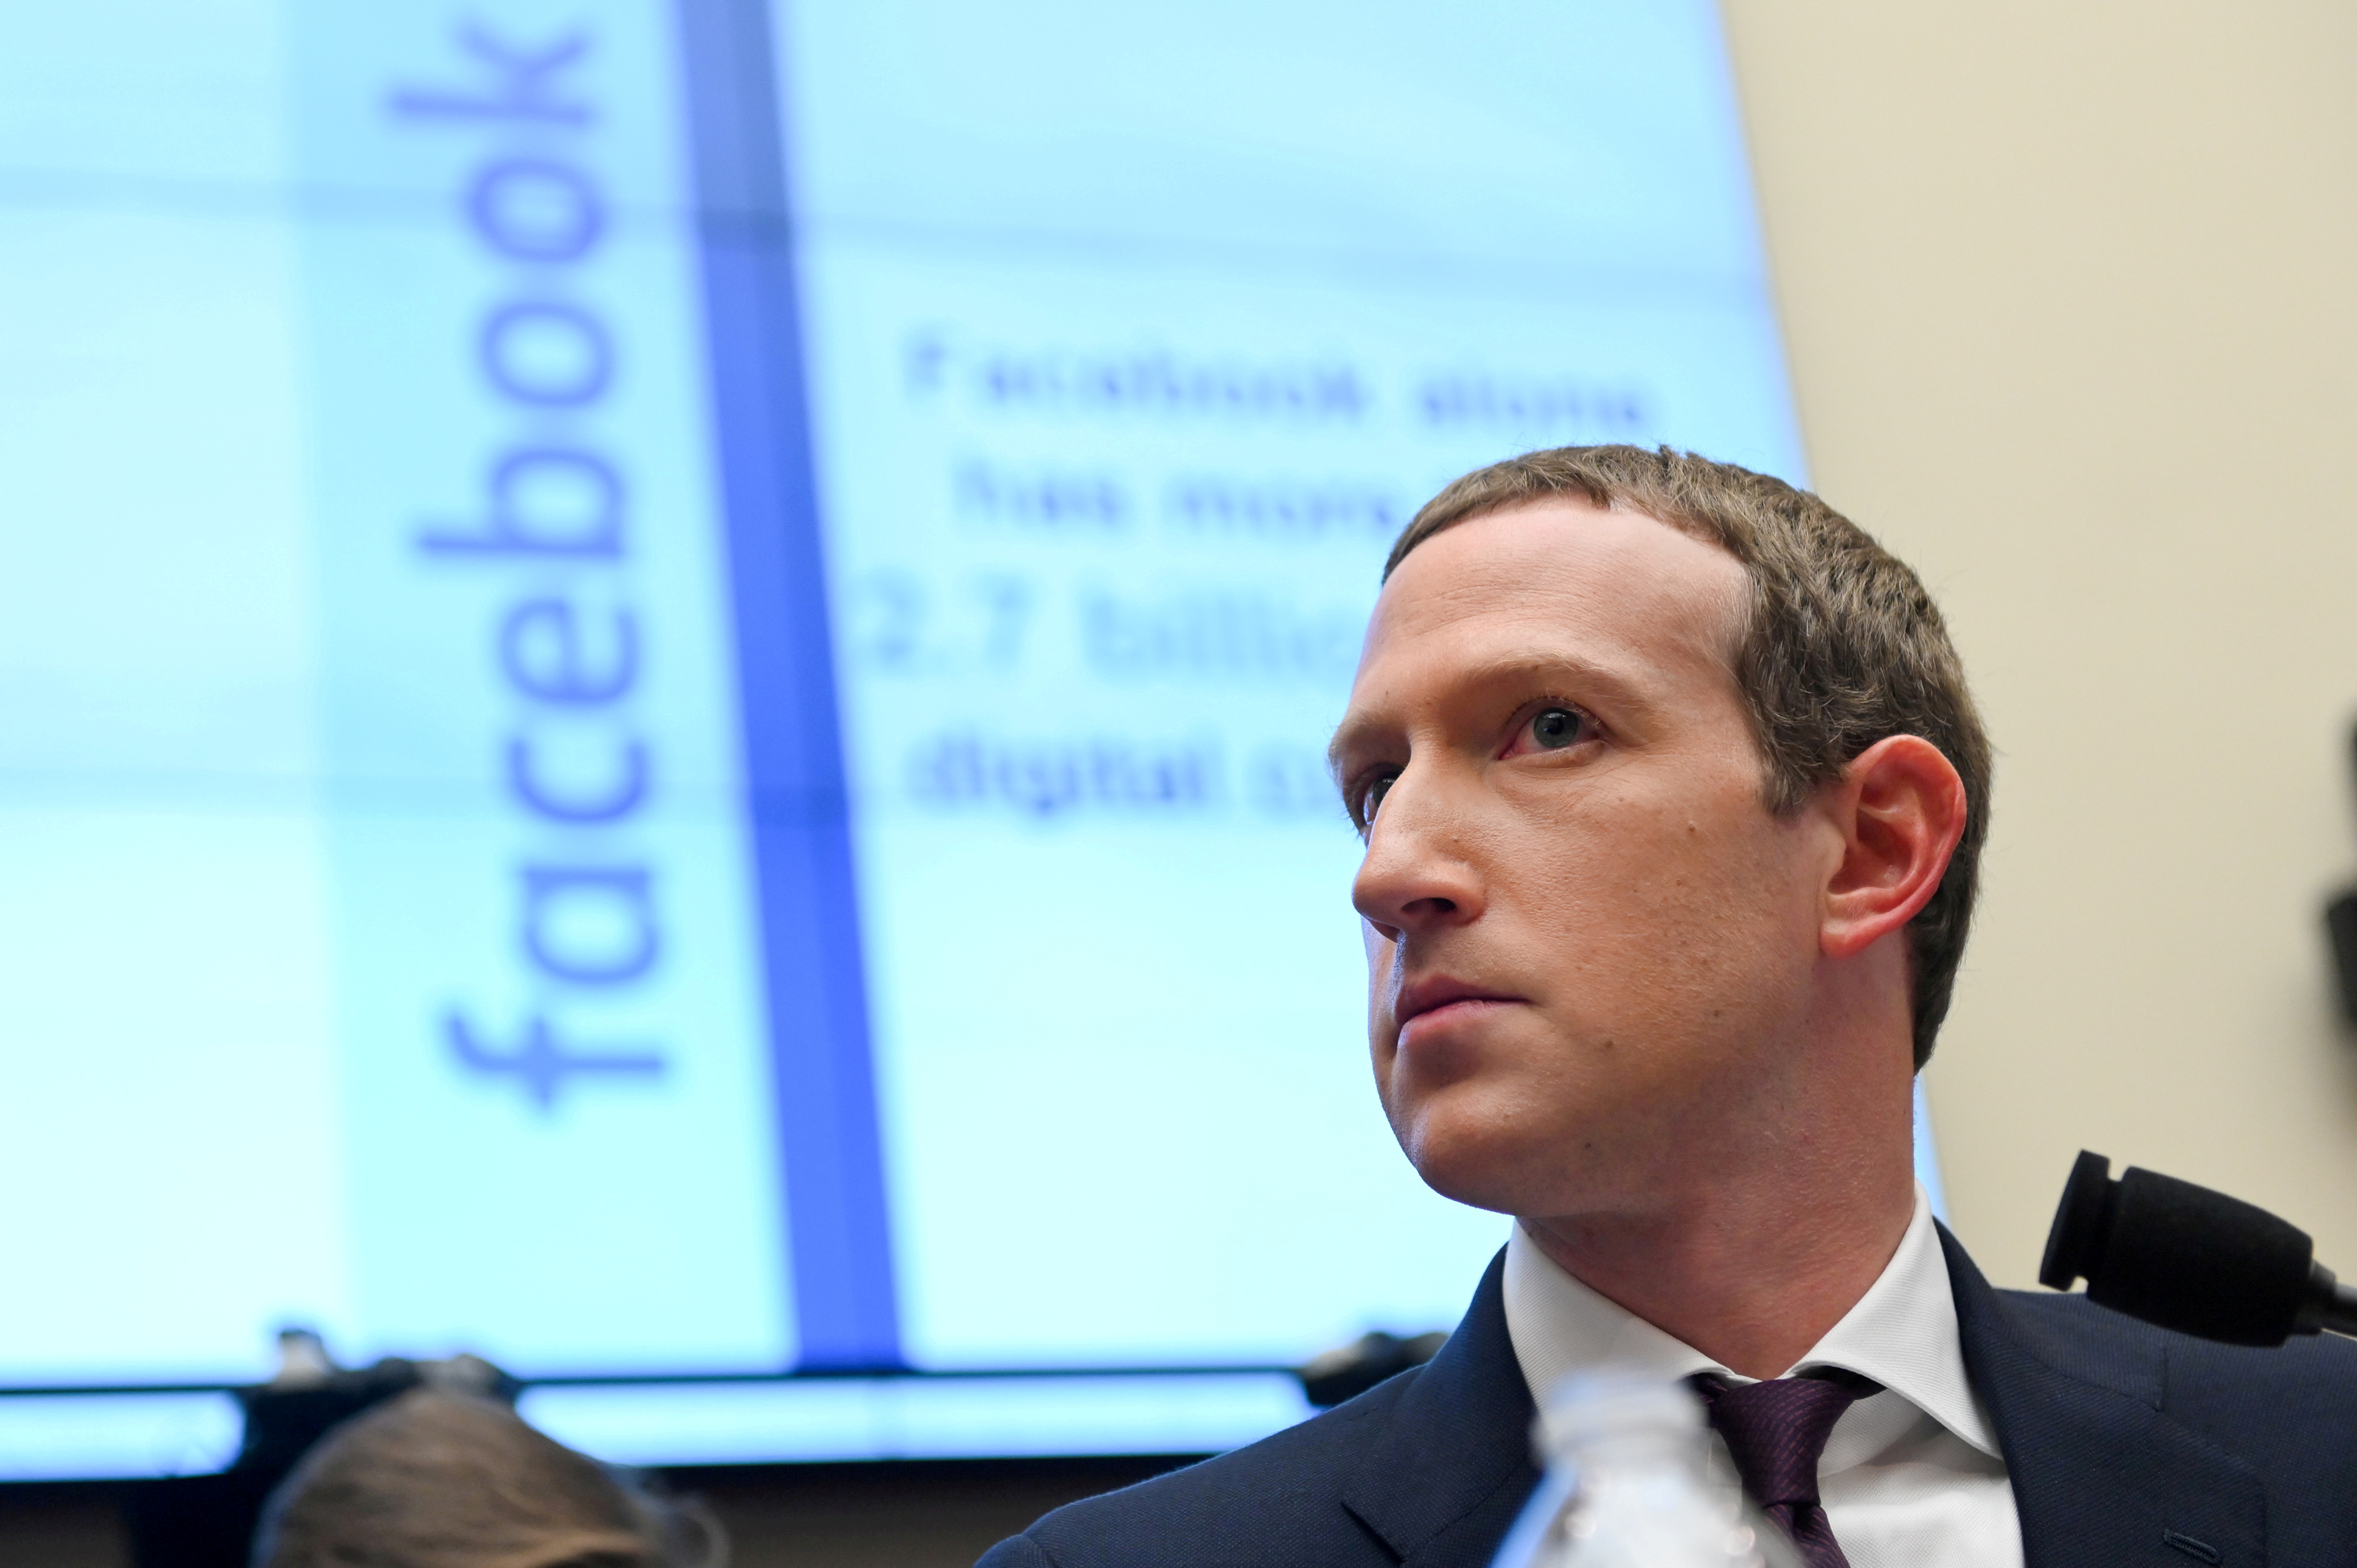 El CEO de Facebook, Mark Zuckerberg, criticó a Apple por el cambio en su política de privacidad (REUTERS/Erin Scott/File Photo/File Photo)